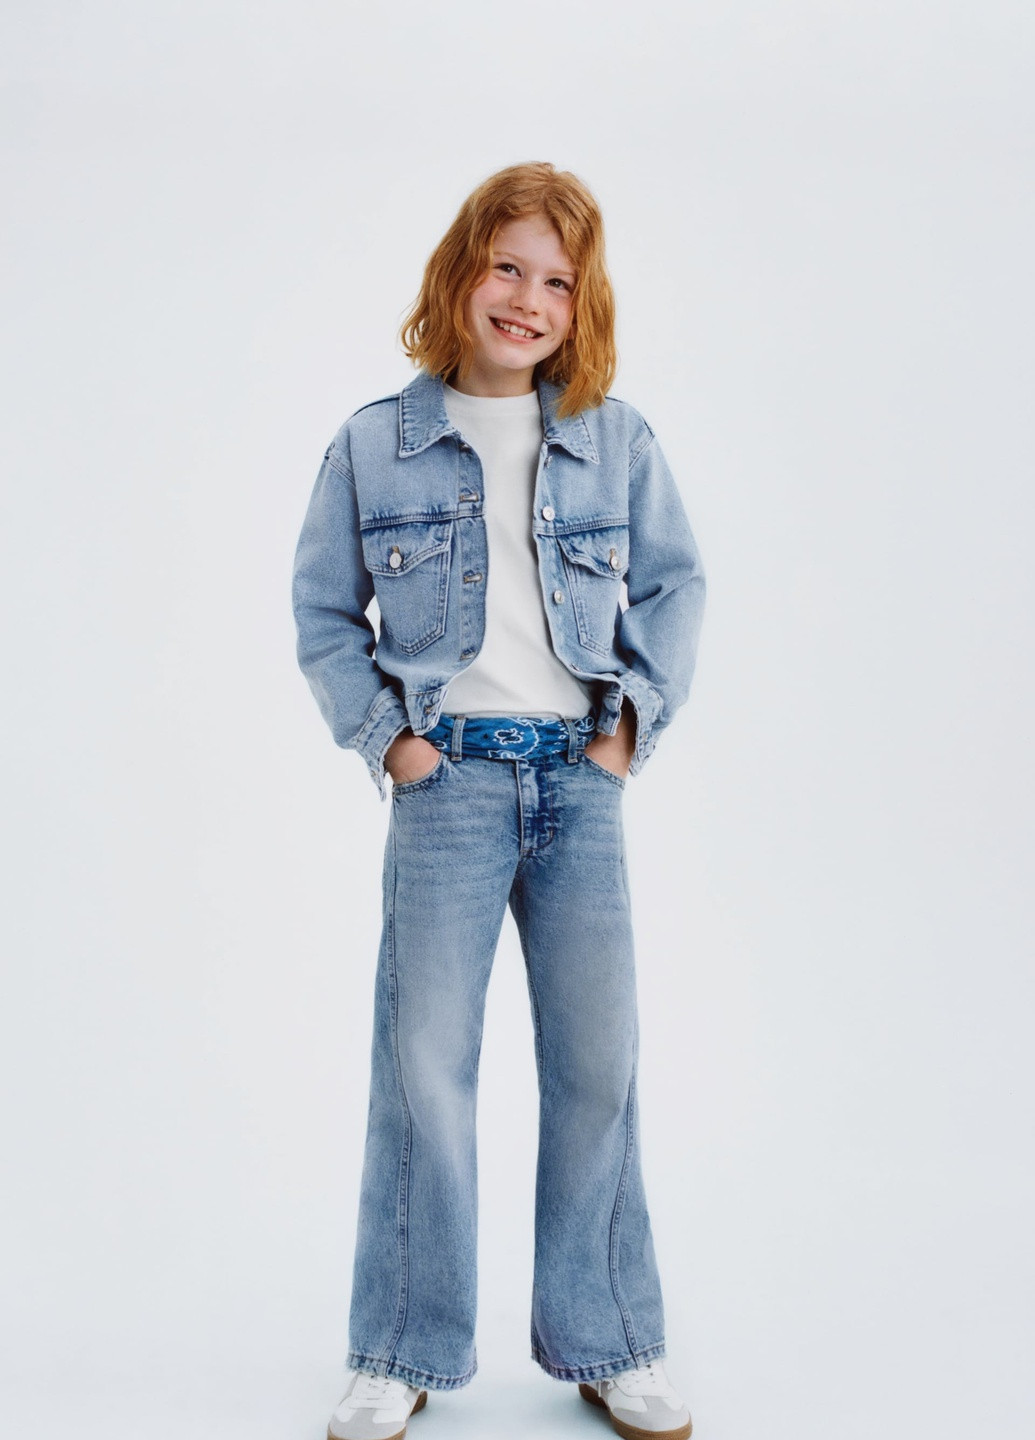 Голубая демисезонная джинсовая куртка для девочки 8761 122 см голубой 65467 Zara